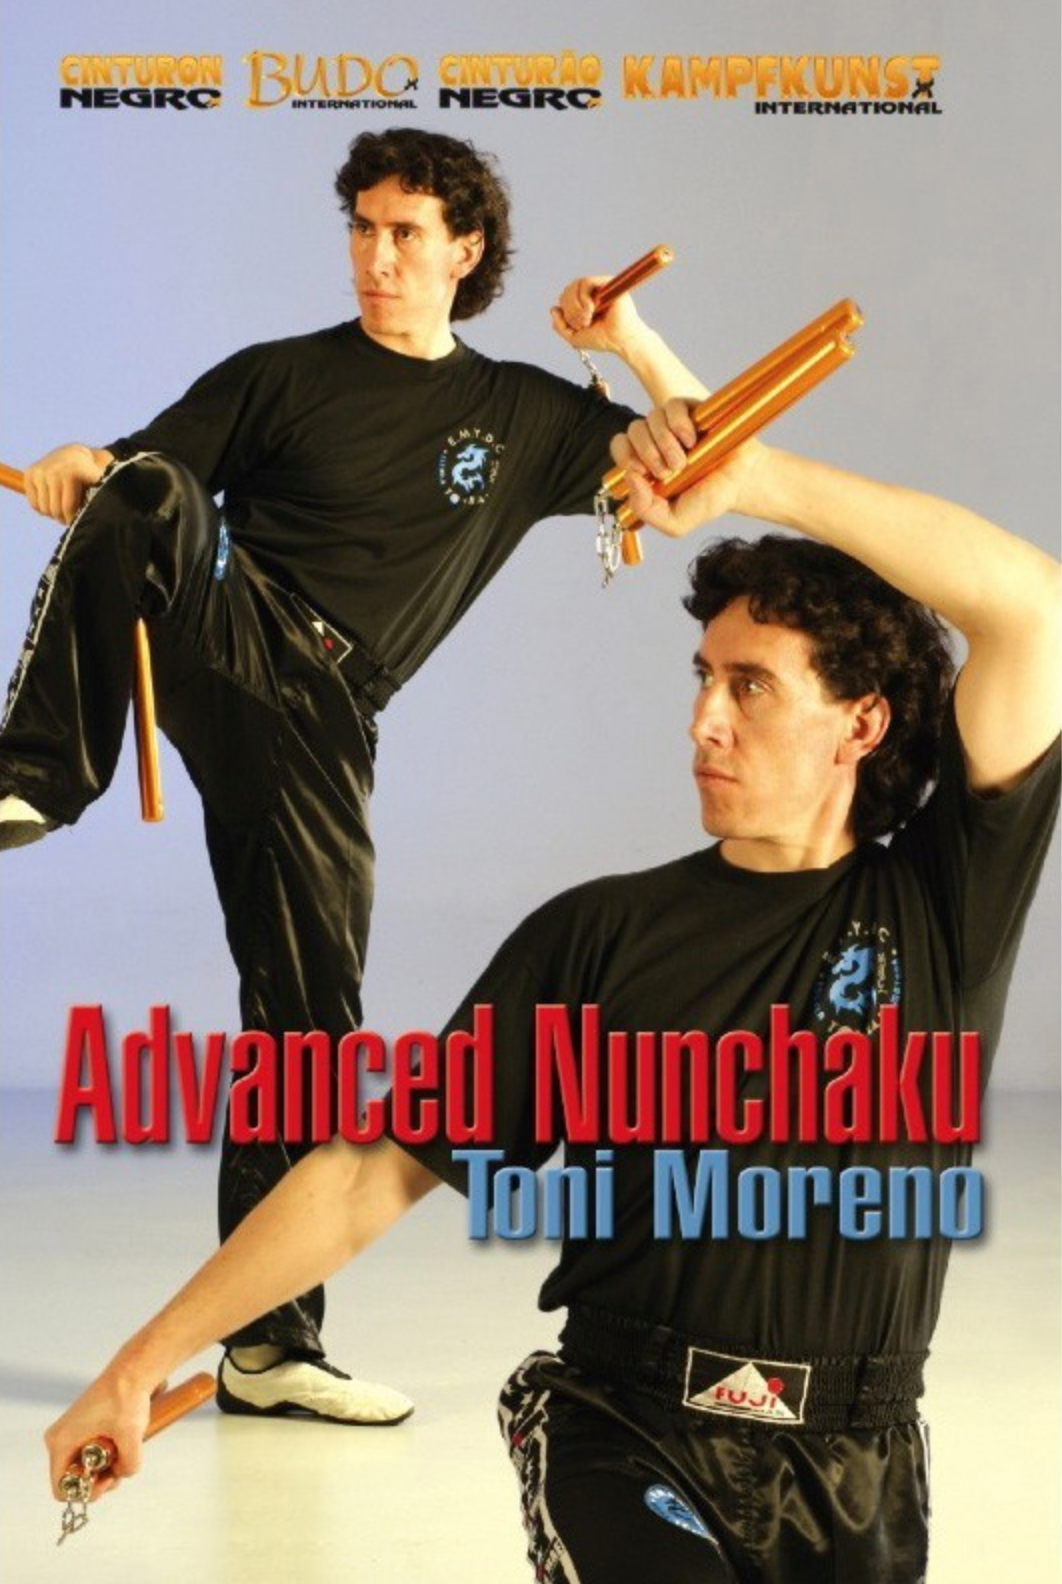 Nunchaku Advanced Method DVD with Toni Moreno - Budovideos Inc